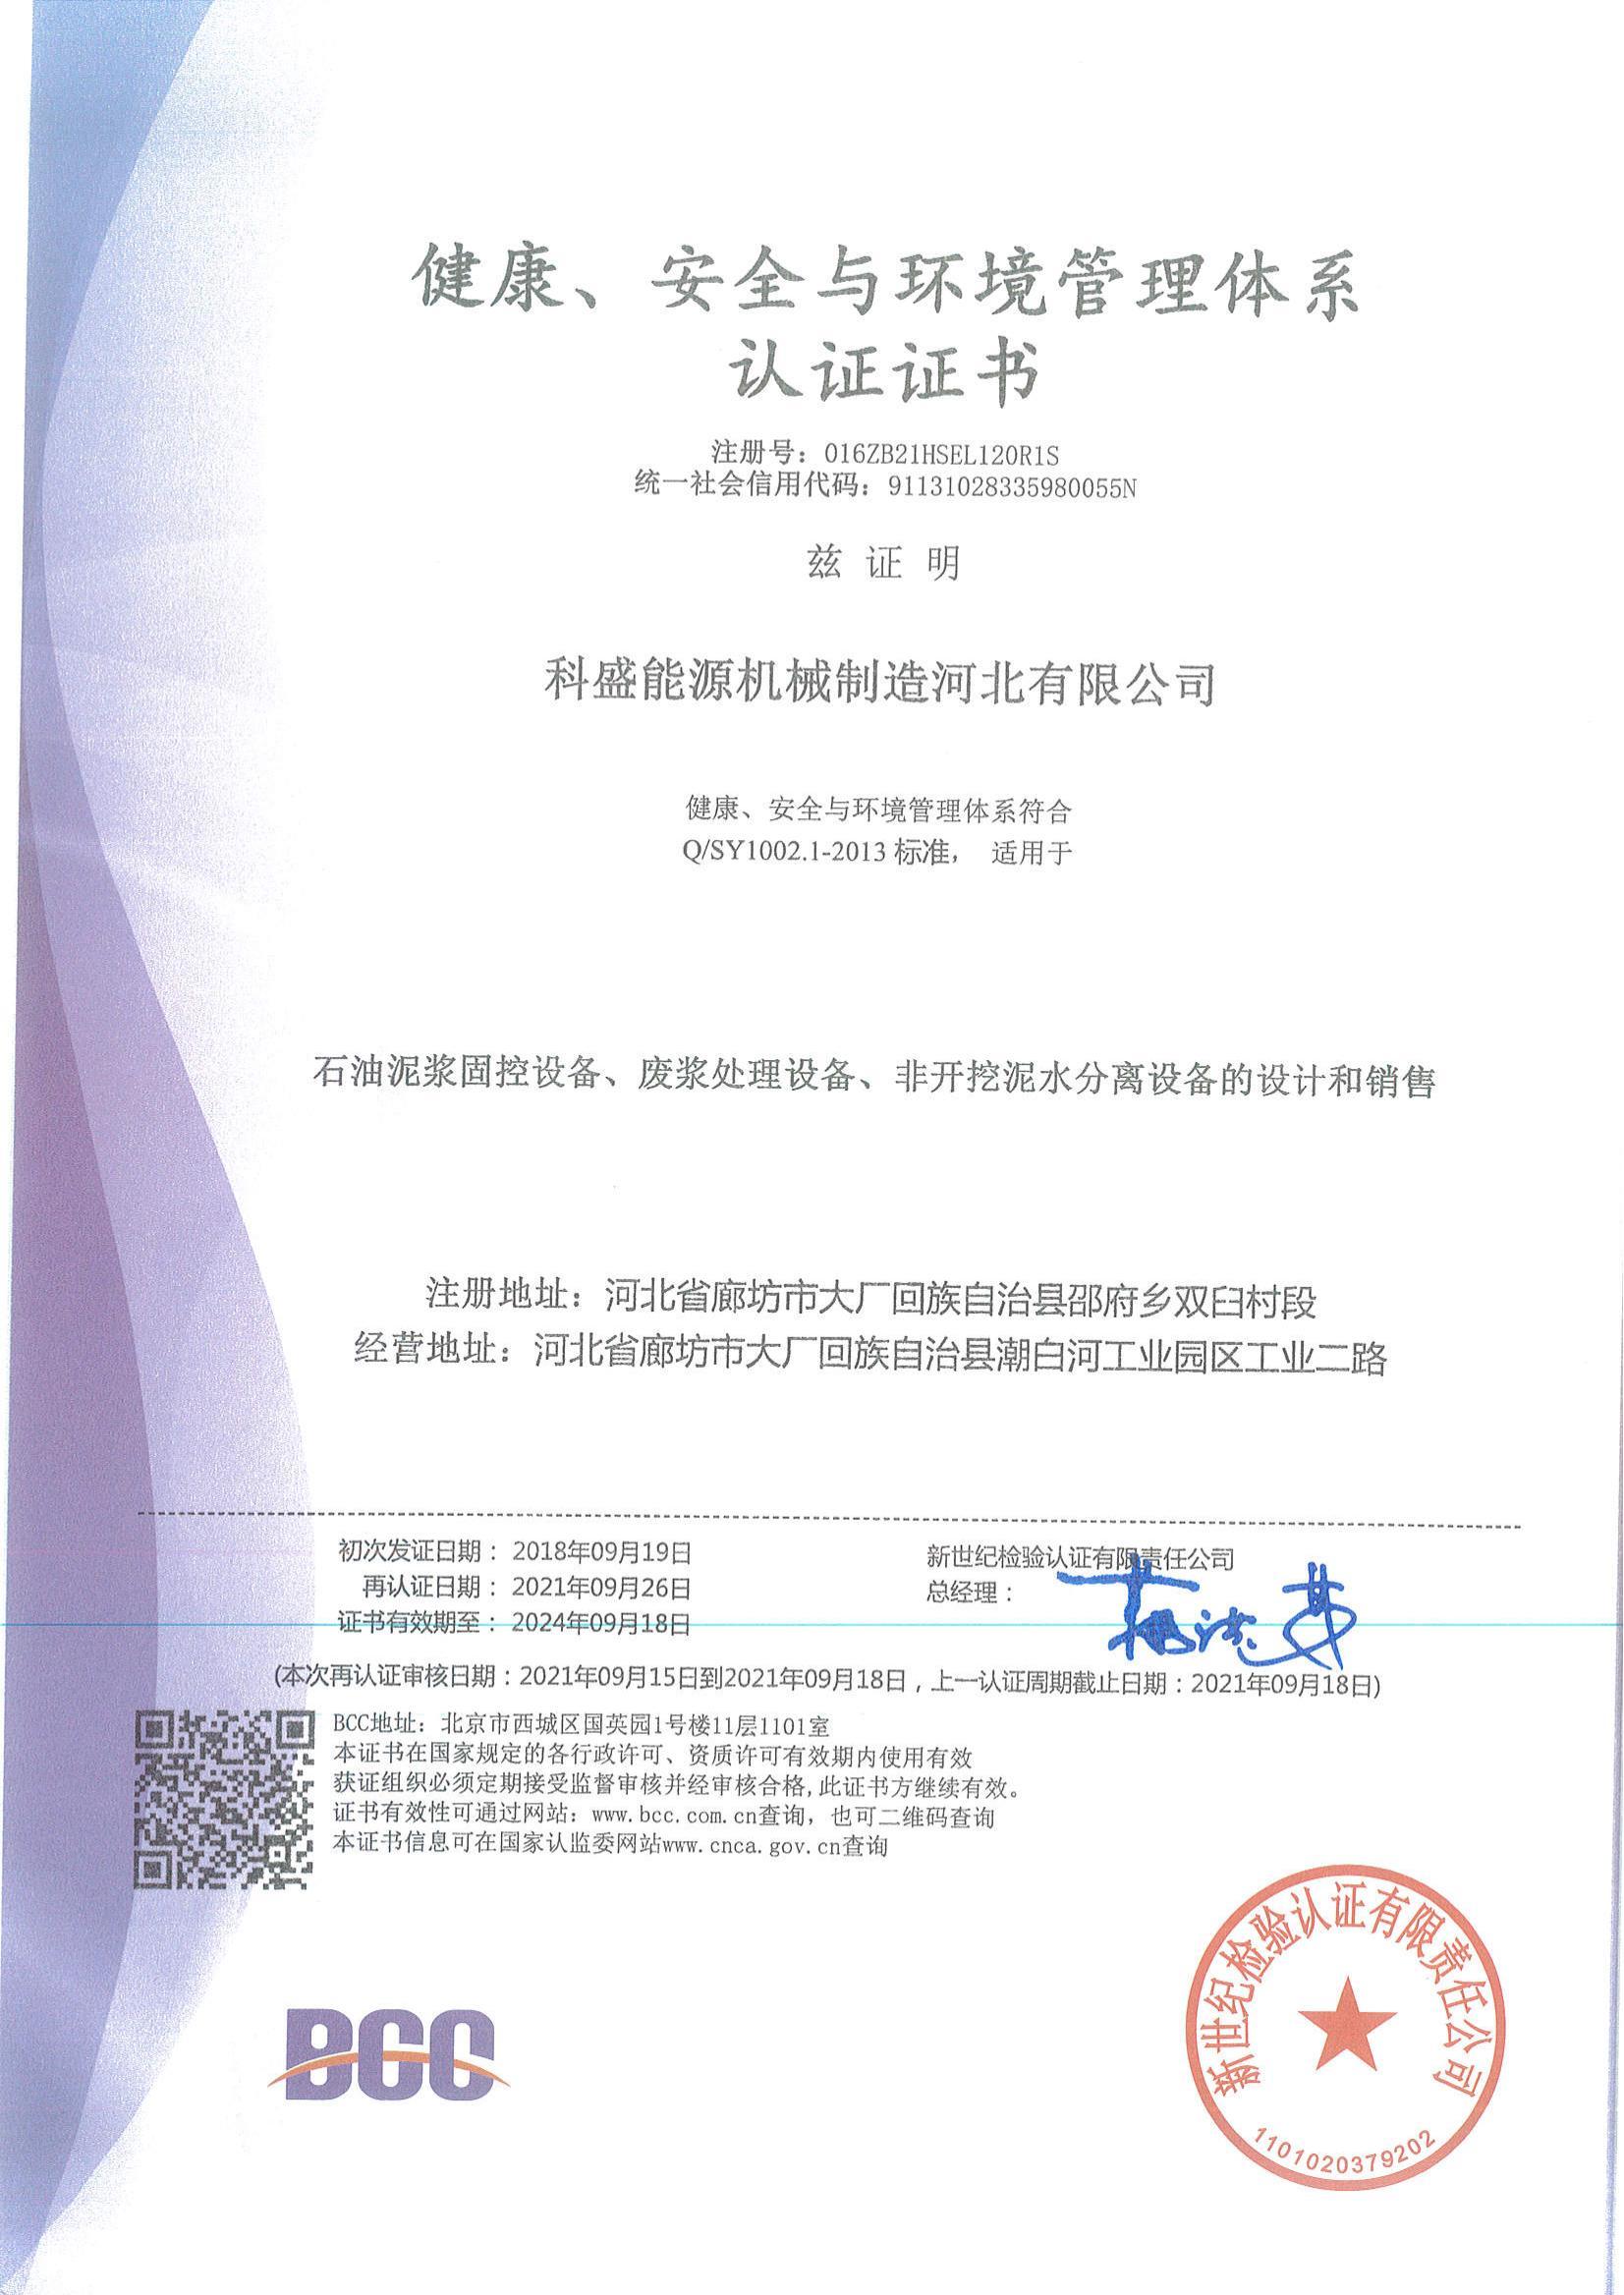 Сертификат системы здравоохранения, безопасности и экологического менеджмента